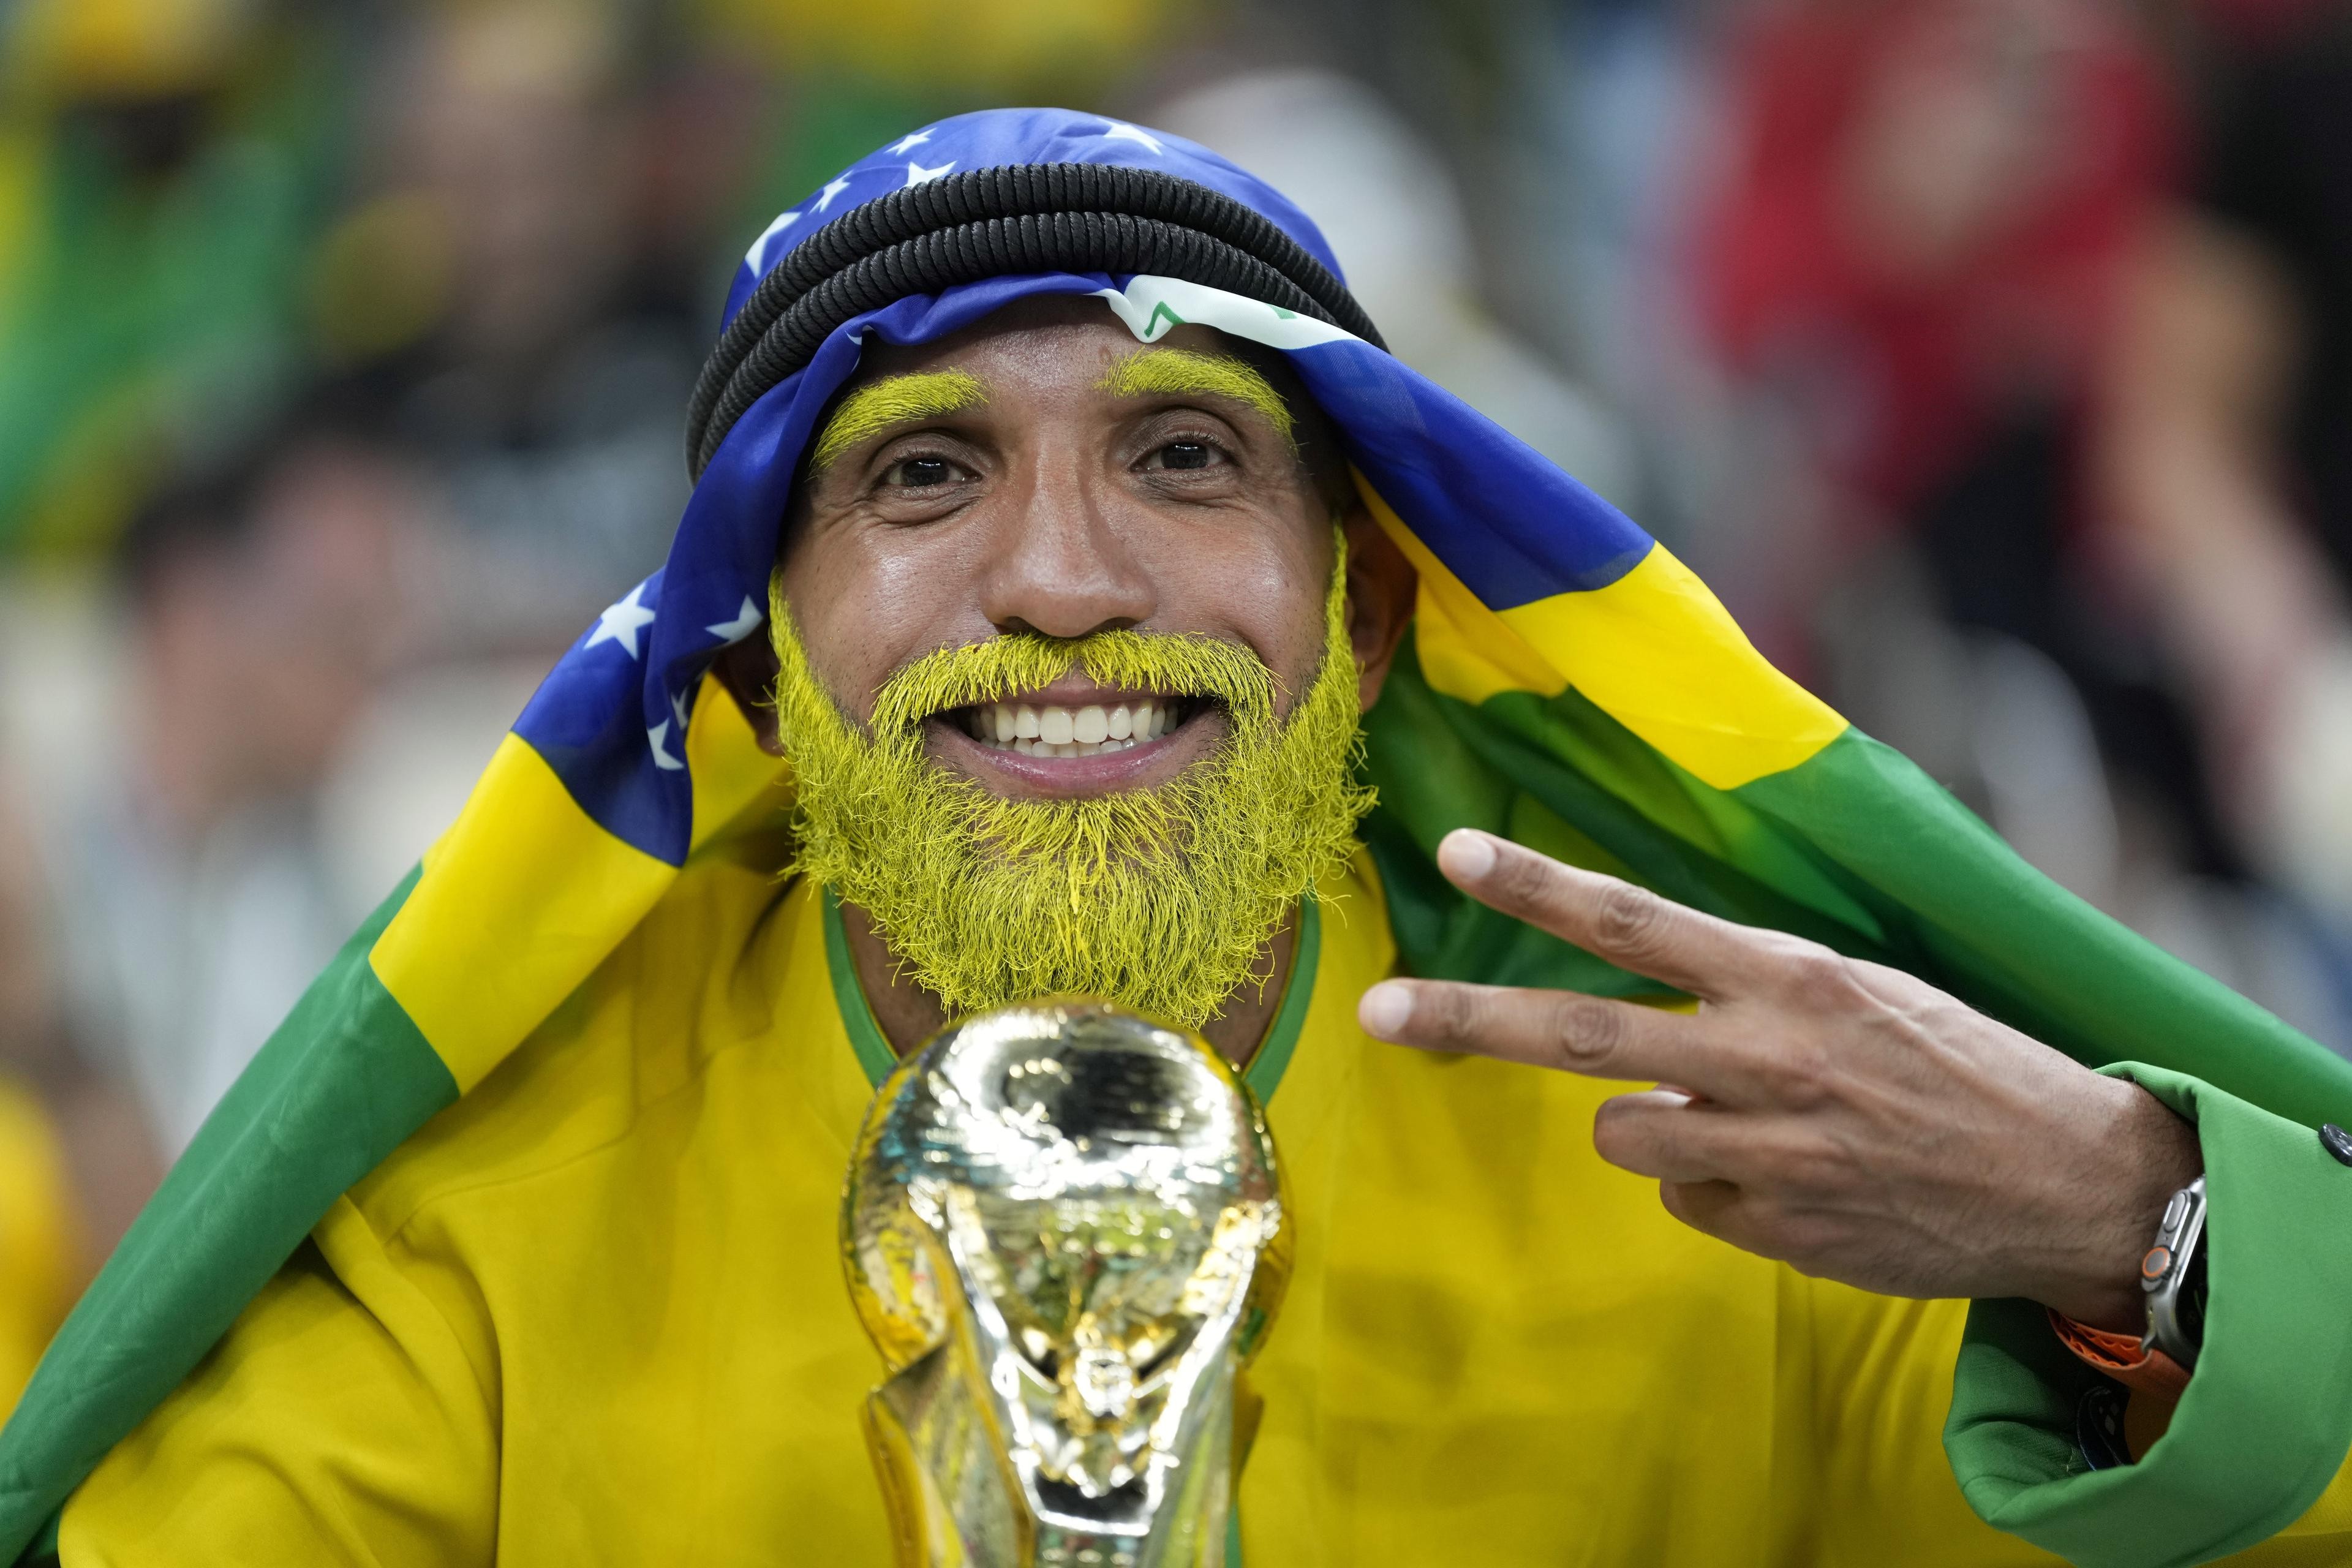 Brasil x Suíça: Veja data e horário do próximo jogo da seleção na Copa do  Mundo, jogo futebol brasil 